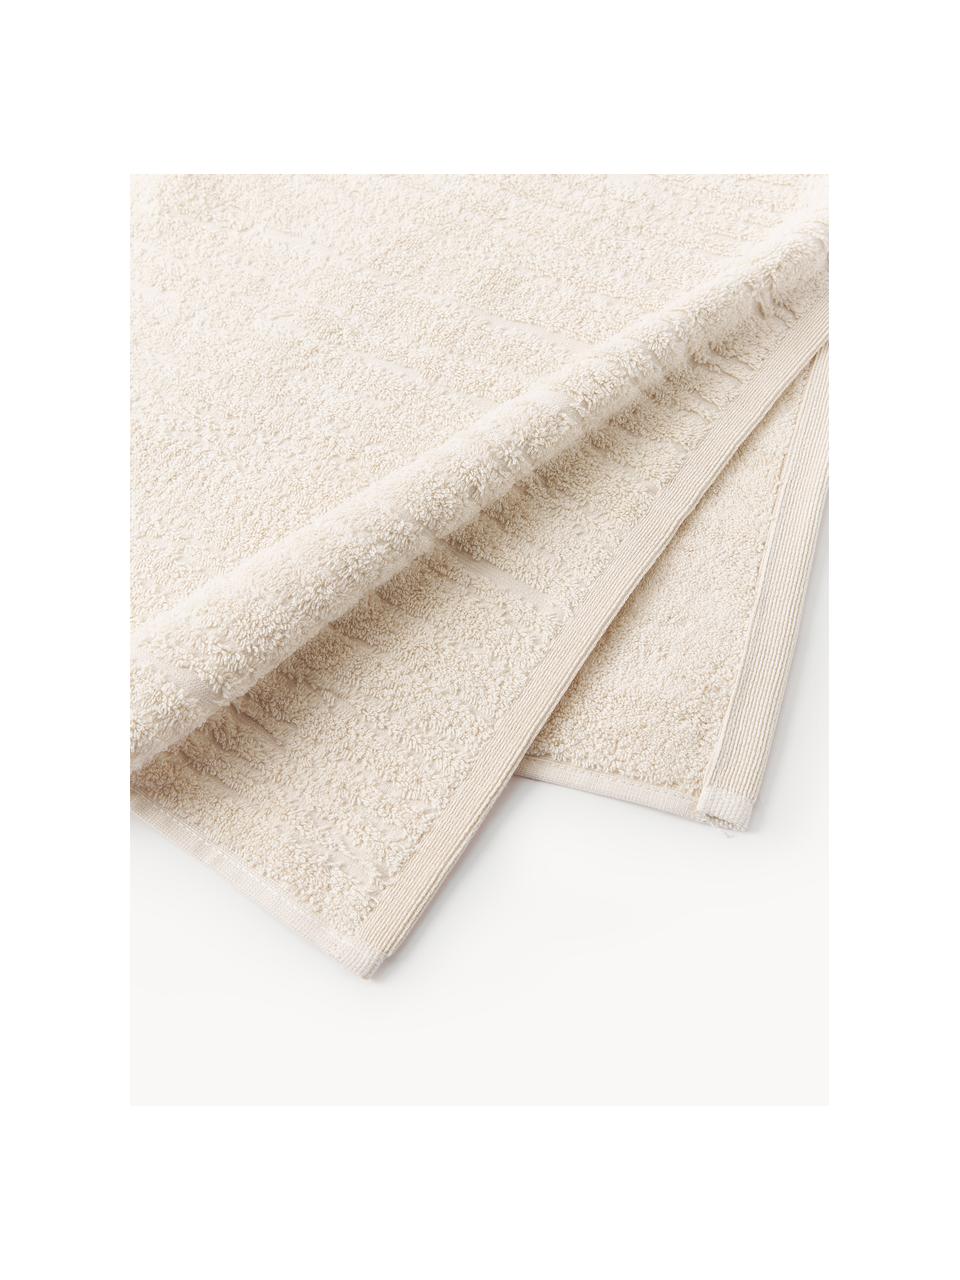 Baumwoll-Handtuch Audrina, in verschiedenen Grössen, Hellbeige, Handtuch, B 50 x L 100 cm, 2 Stück